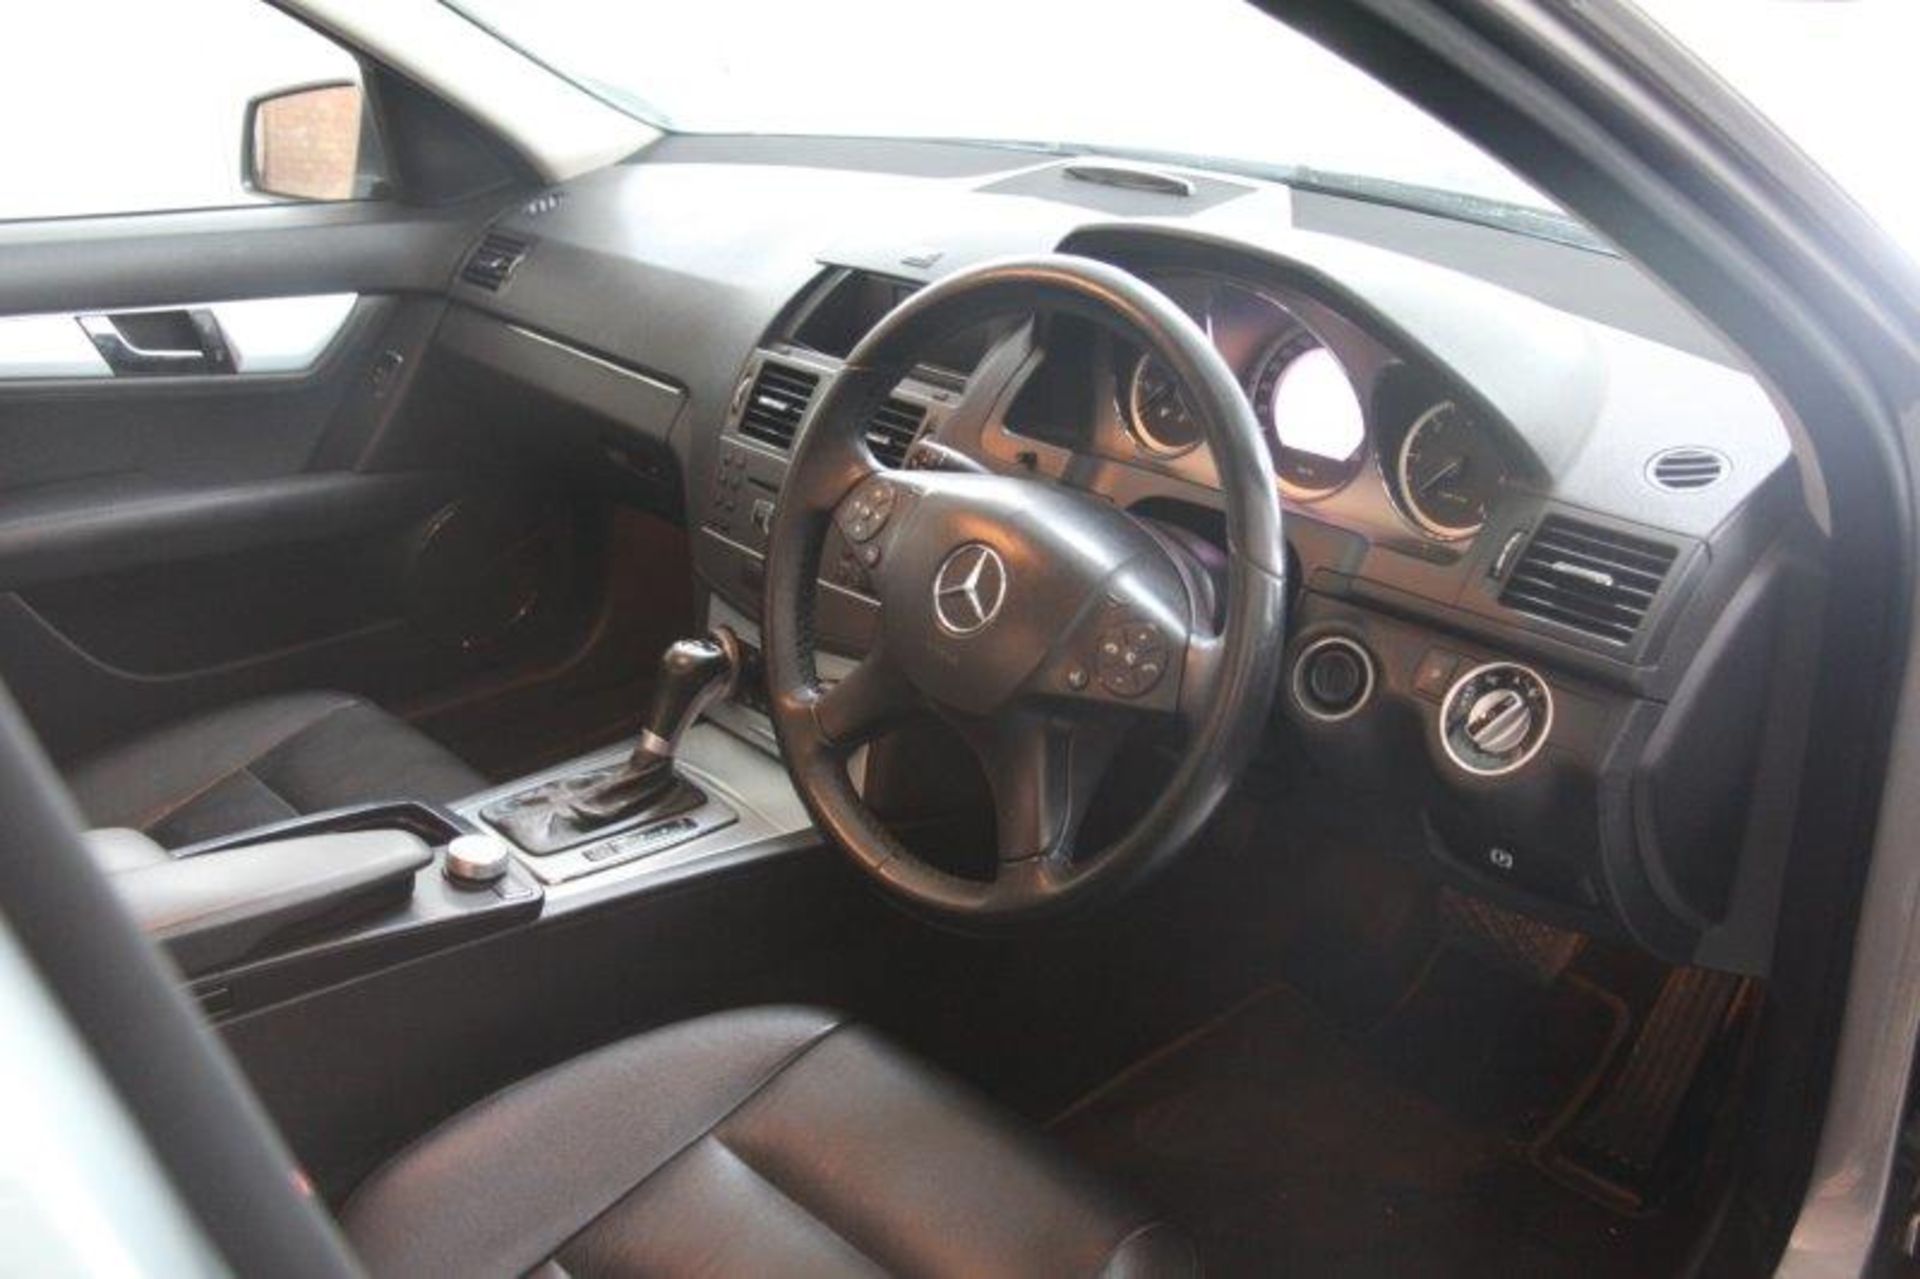 2011 Mercedes-Benz C220 Cdi Blue Efficiency Avantgarde Auto (Vin No: WDD2040022R169566 )(158946 - Image 5 of 6